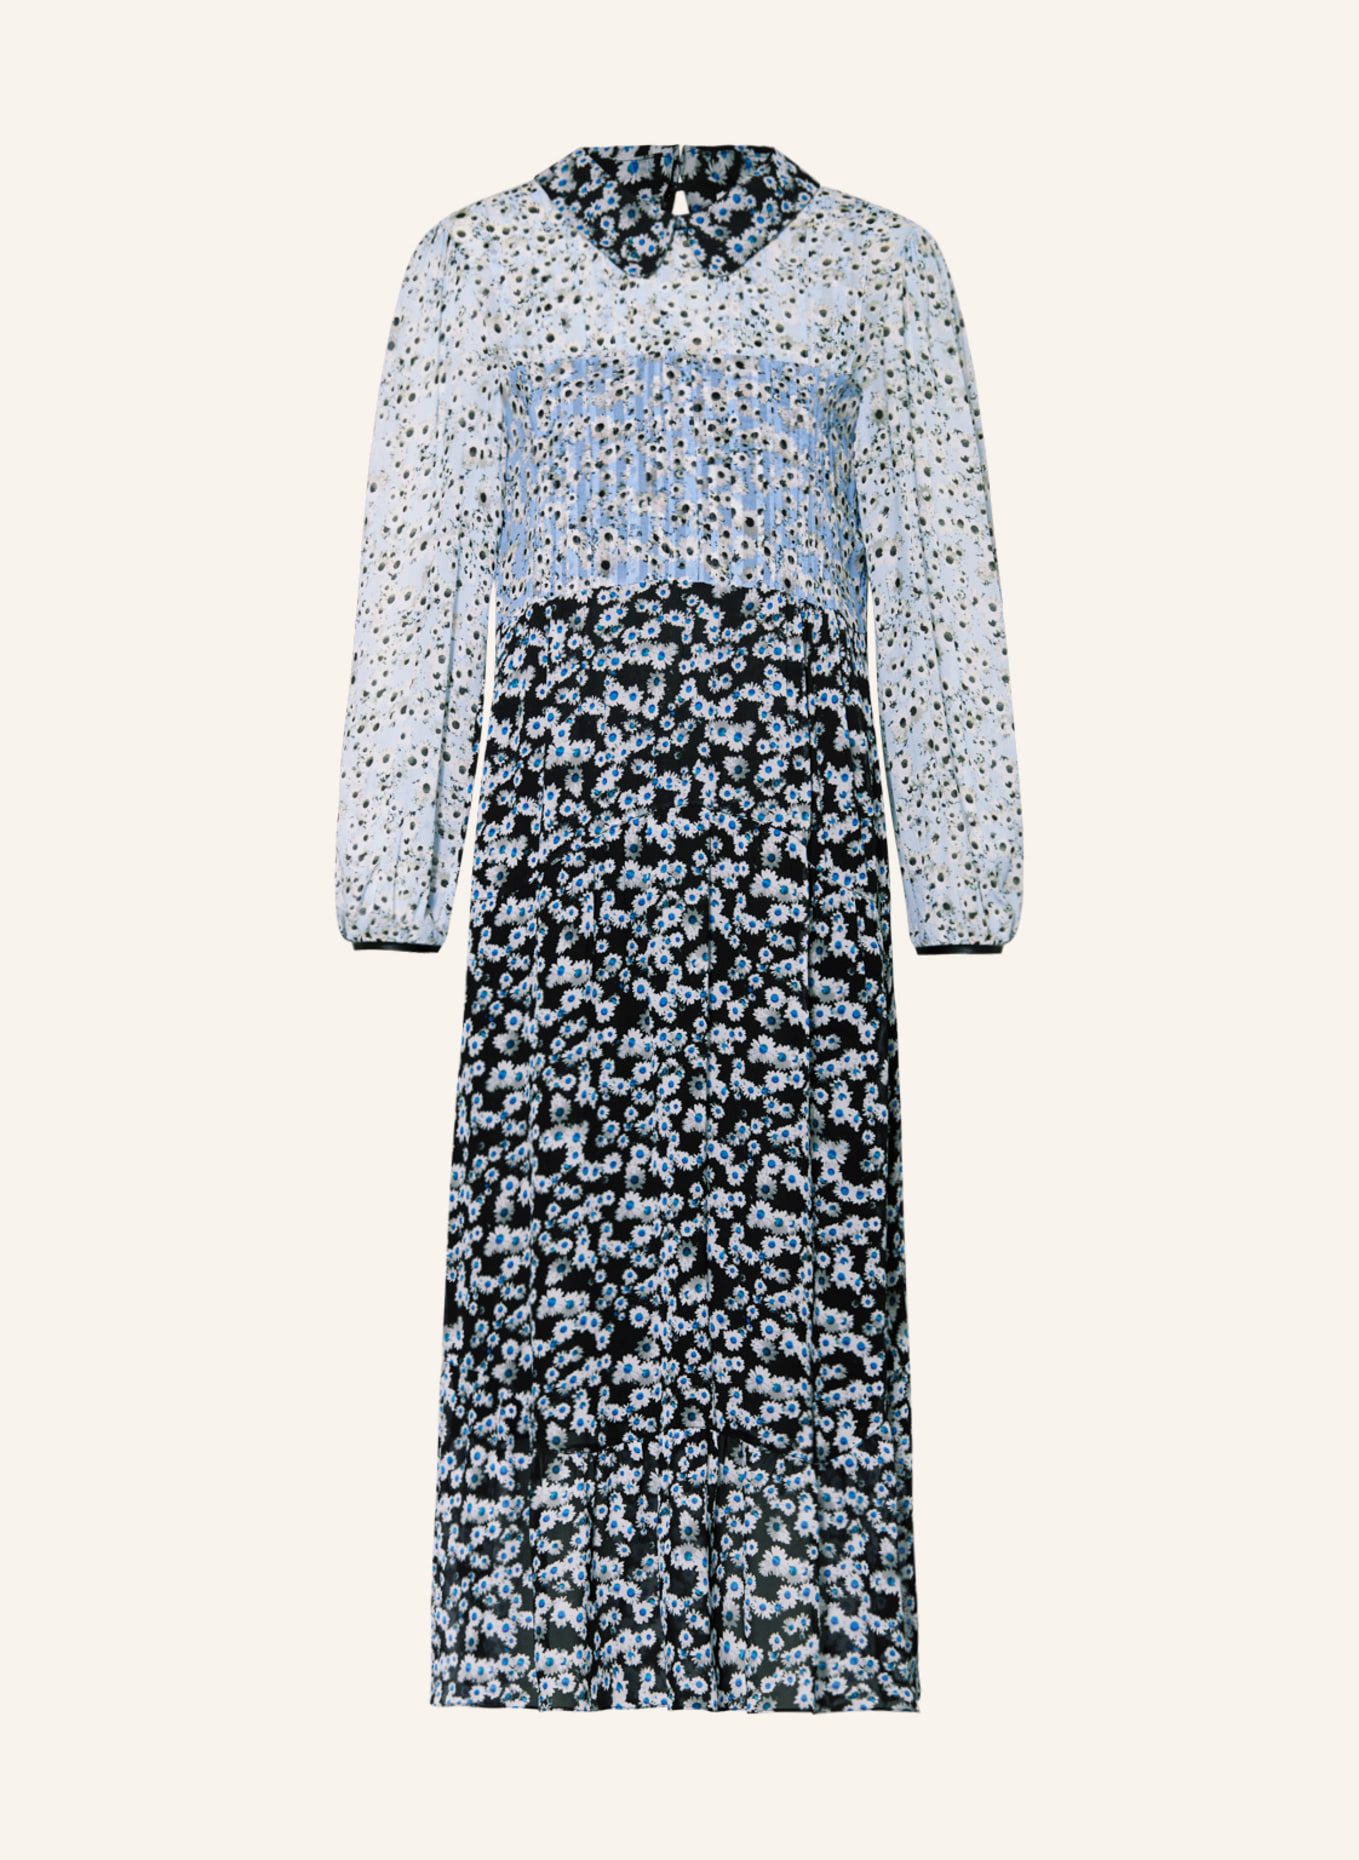 DOROTHEE SCHUMACHER Kleid mit Volants, Farbe: HELLBLAU/ DUNKELBLAU/ WEISS (Bild 1)